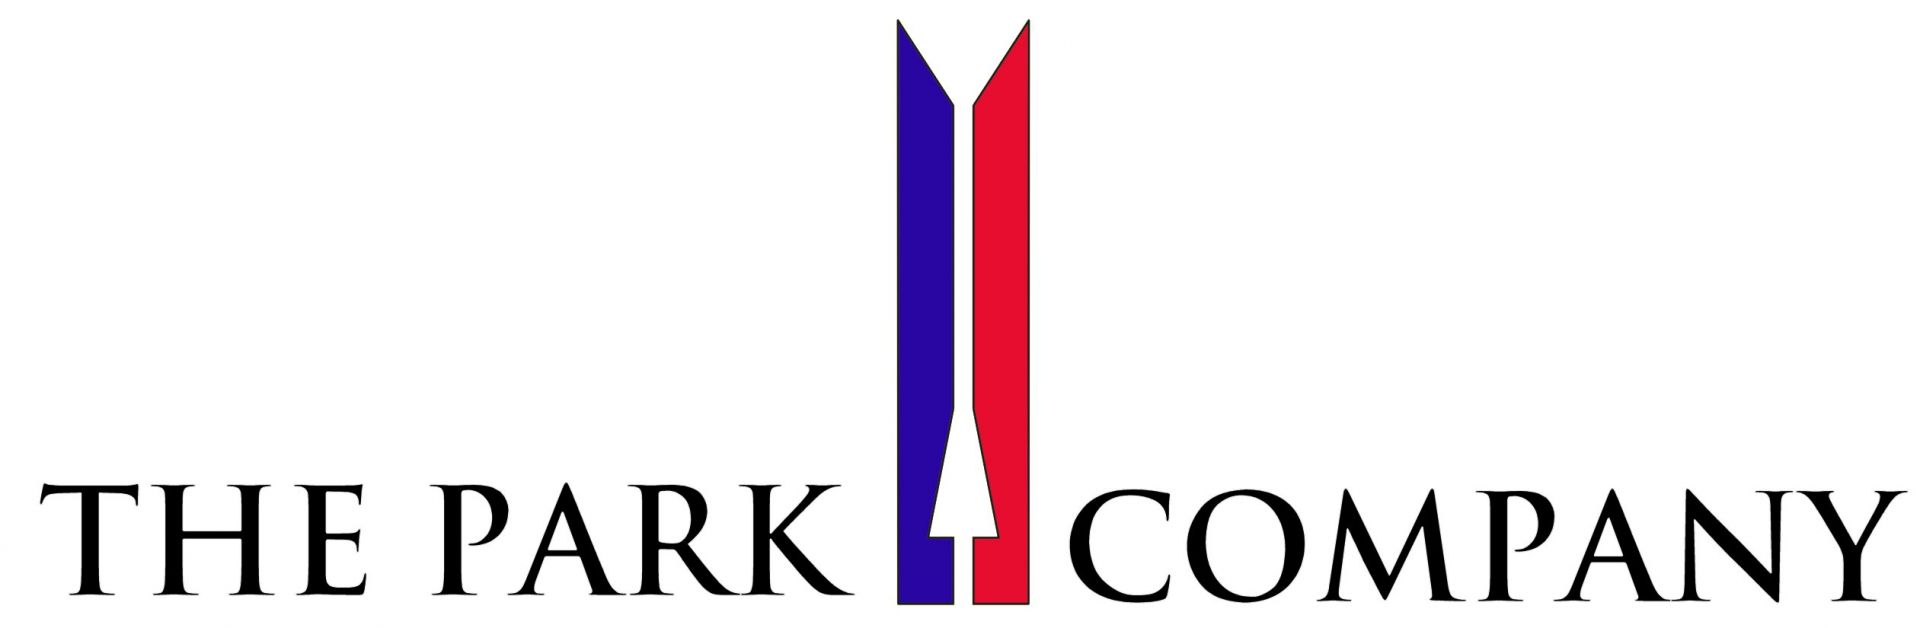 The Park Company logo